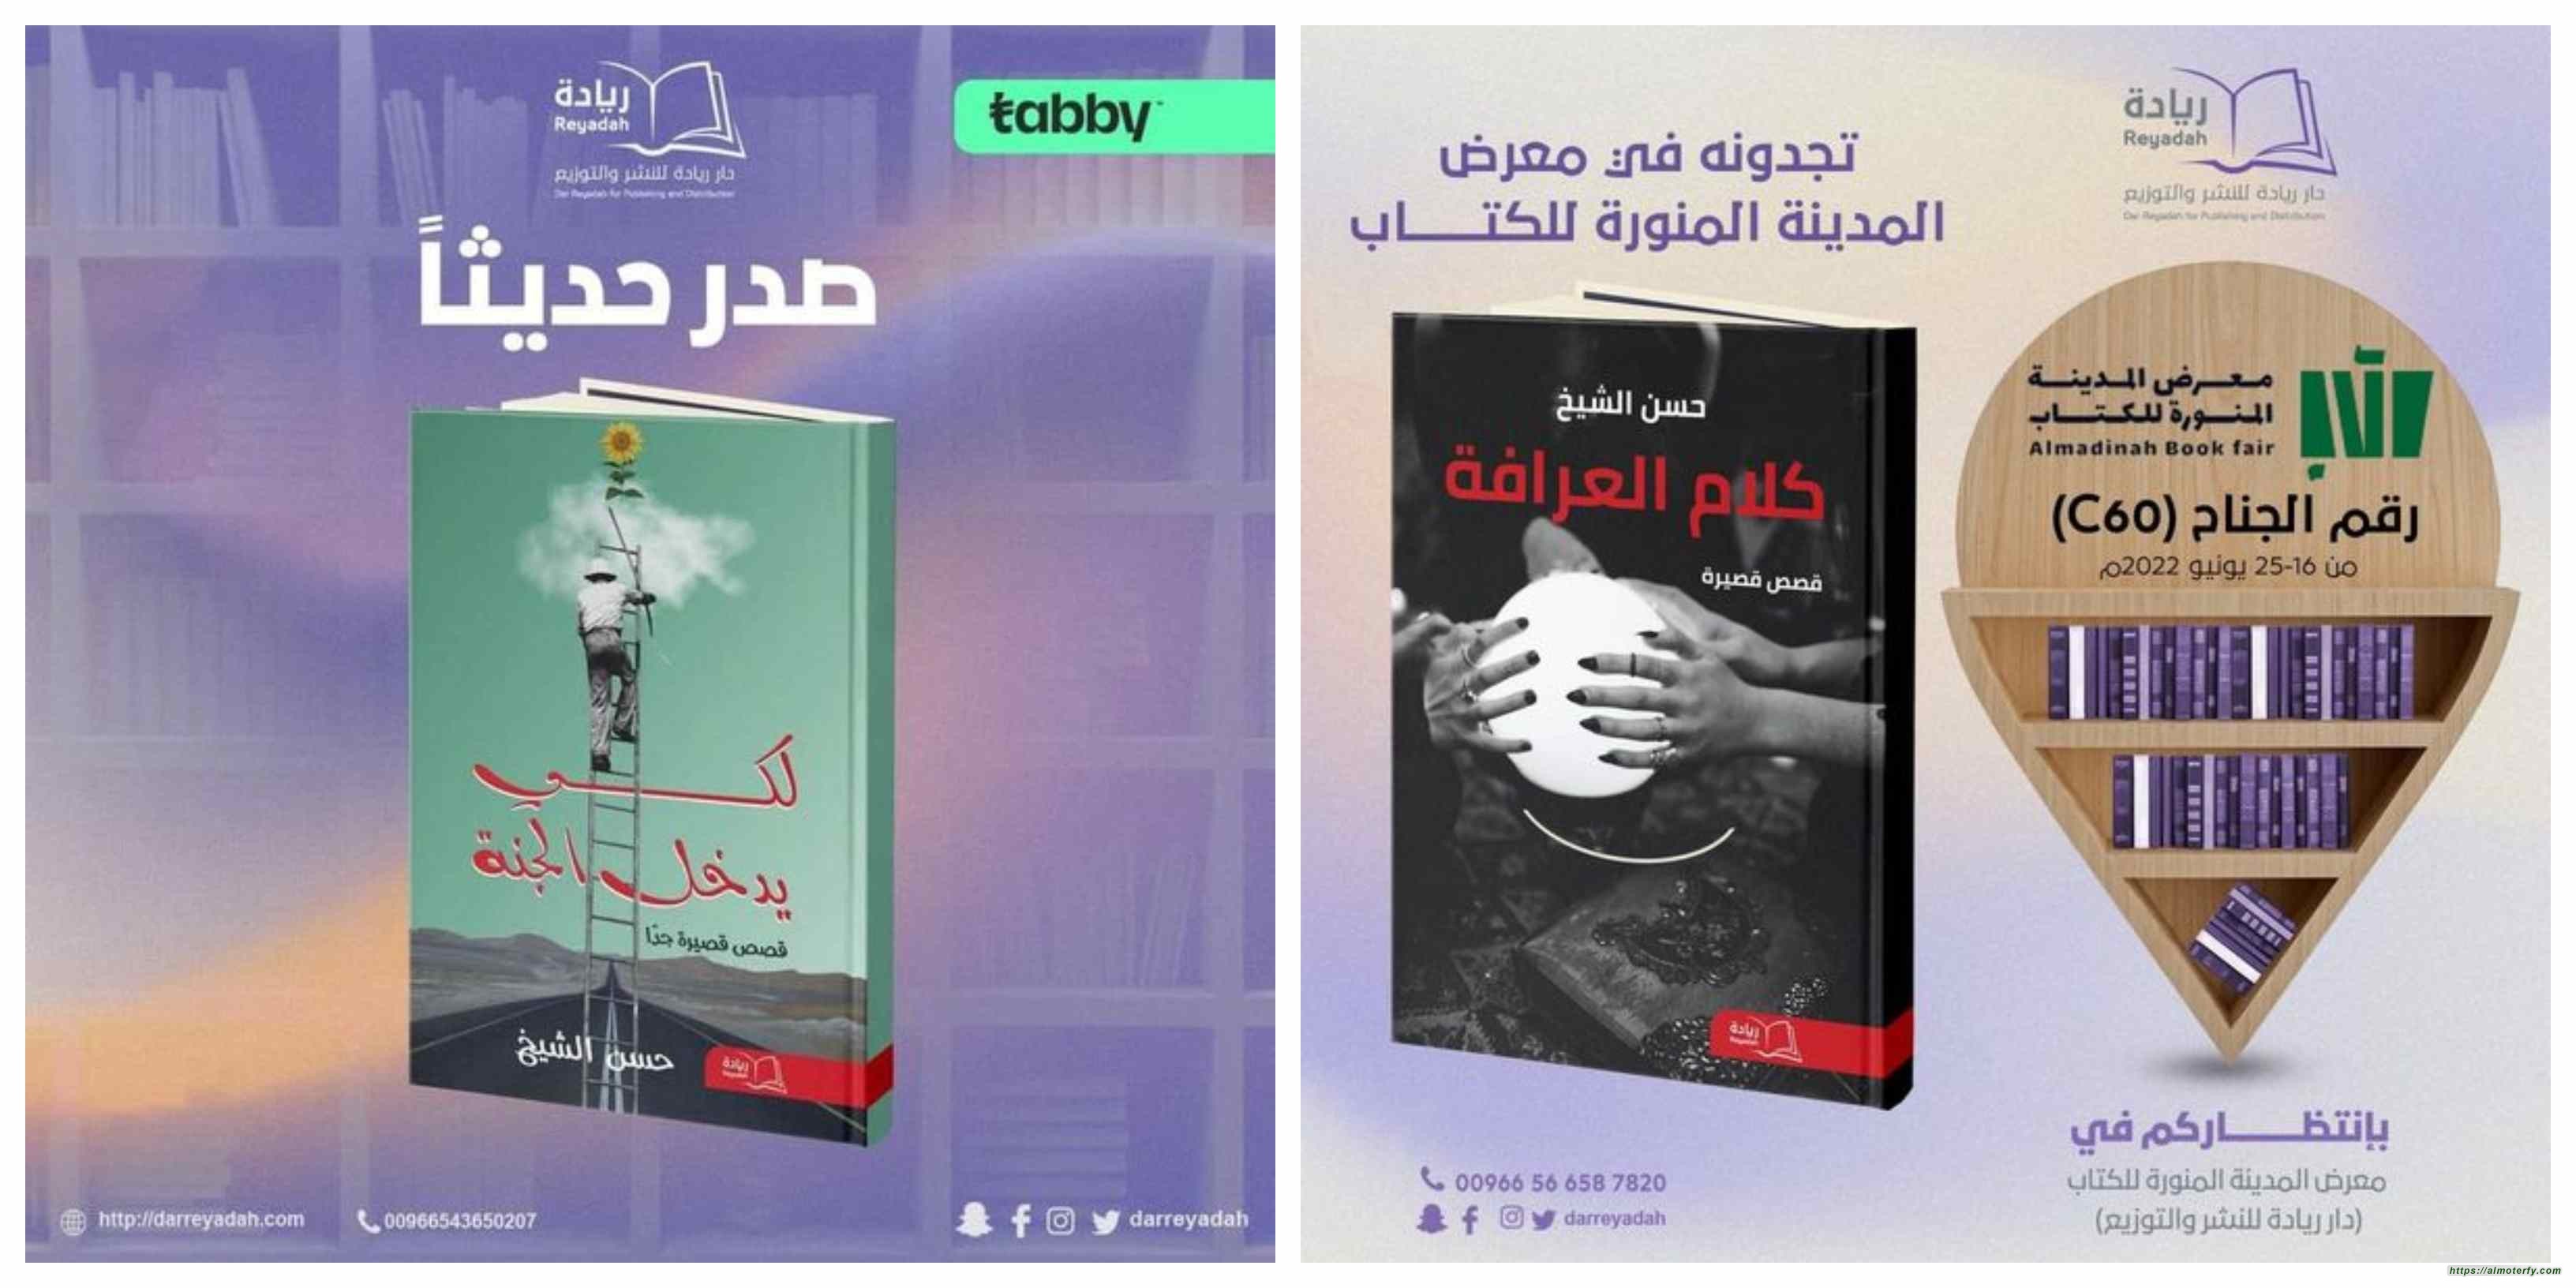 إصداران جديدان للقاص حسن الشيخ